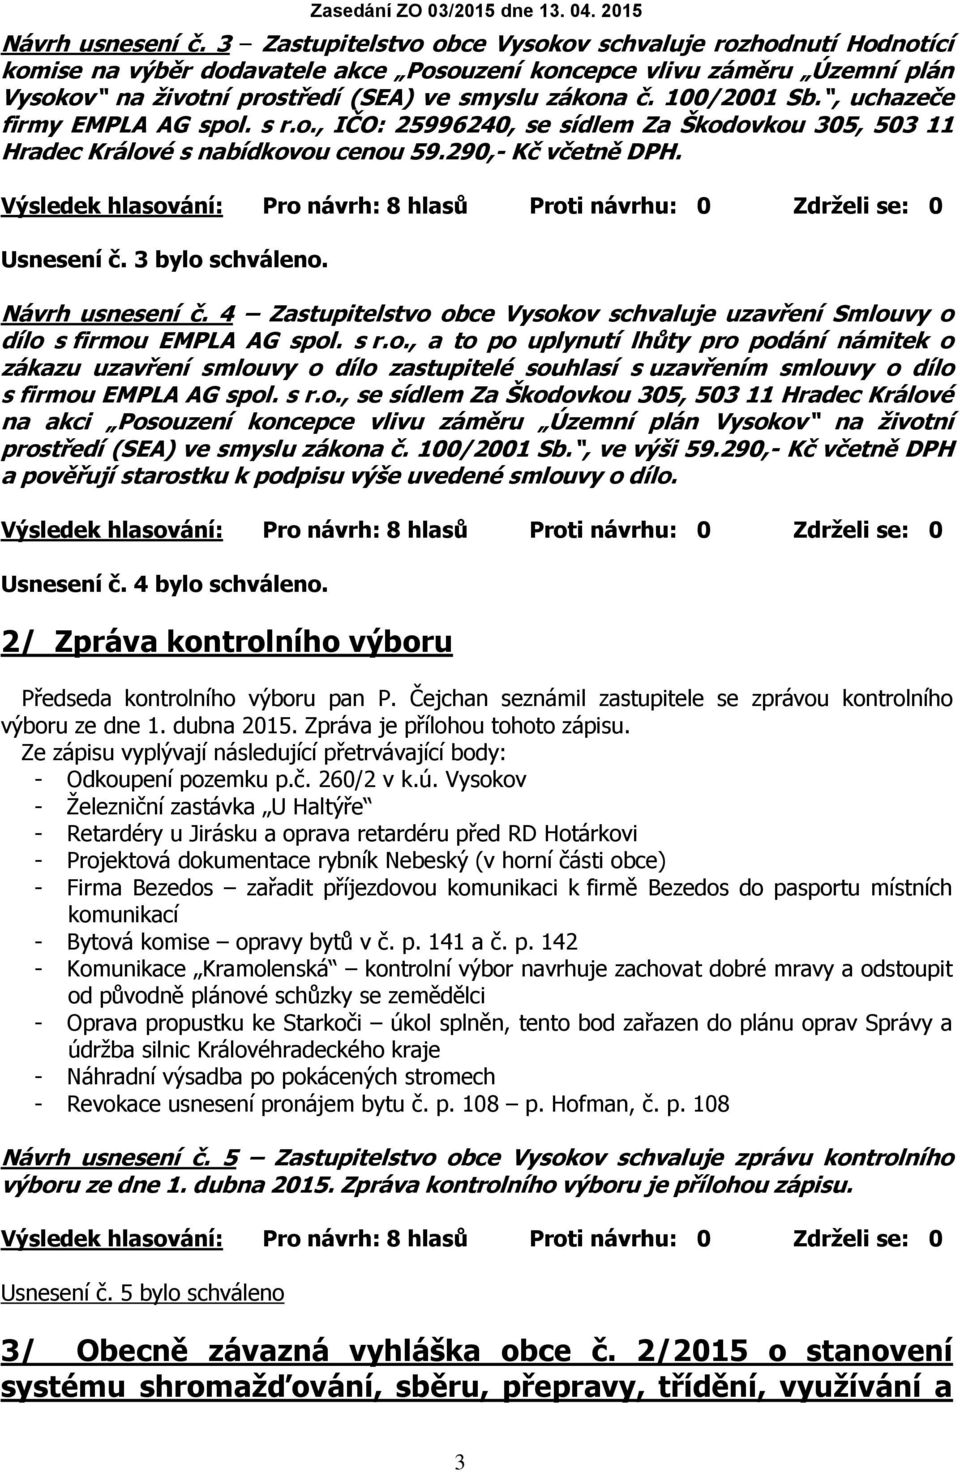 100/2001 Sb., uchazeče firmy EMPLA AG spol. s r.o., IČO: 25996240, se sídlem Za Škodovkou 305, 503 11 Hradec Králové s nabídkovou cenou 59.290,- Kč včetně DPH. Usnesení č. 3 bylo schváleno.